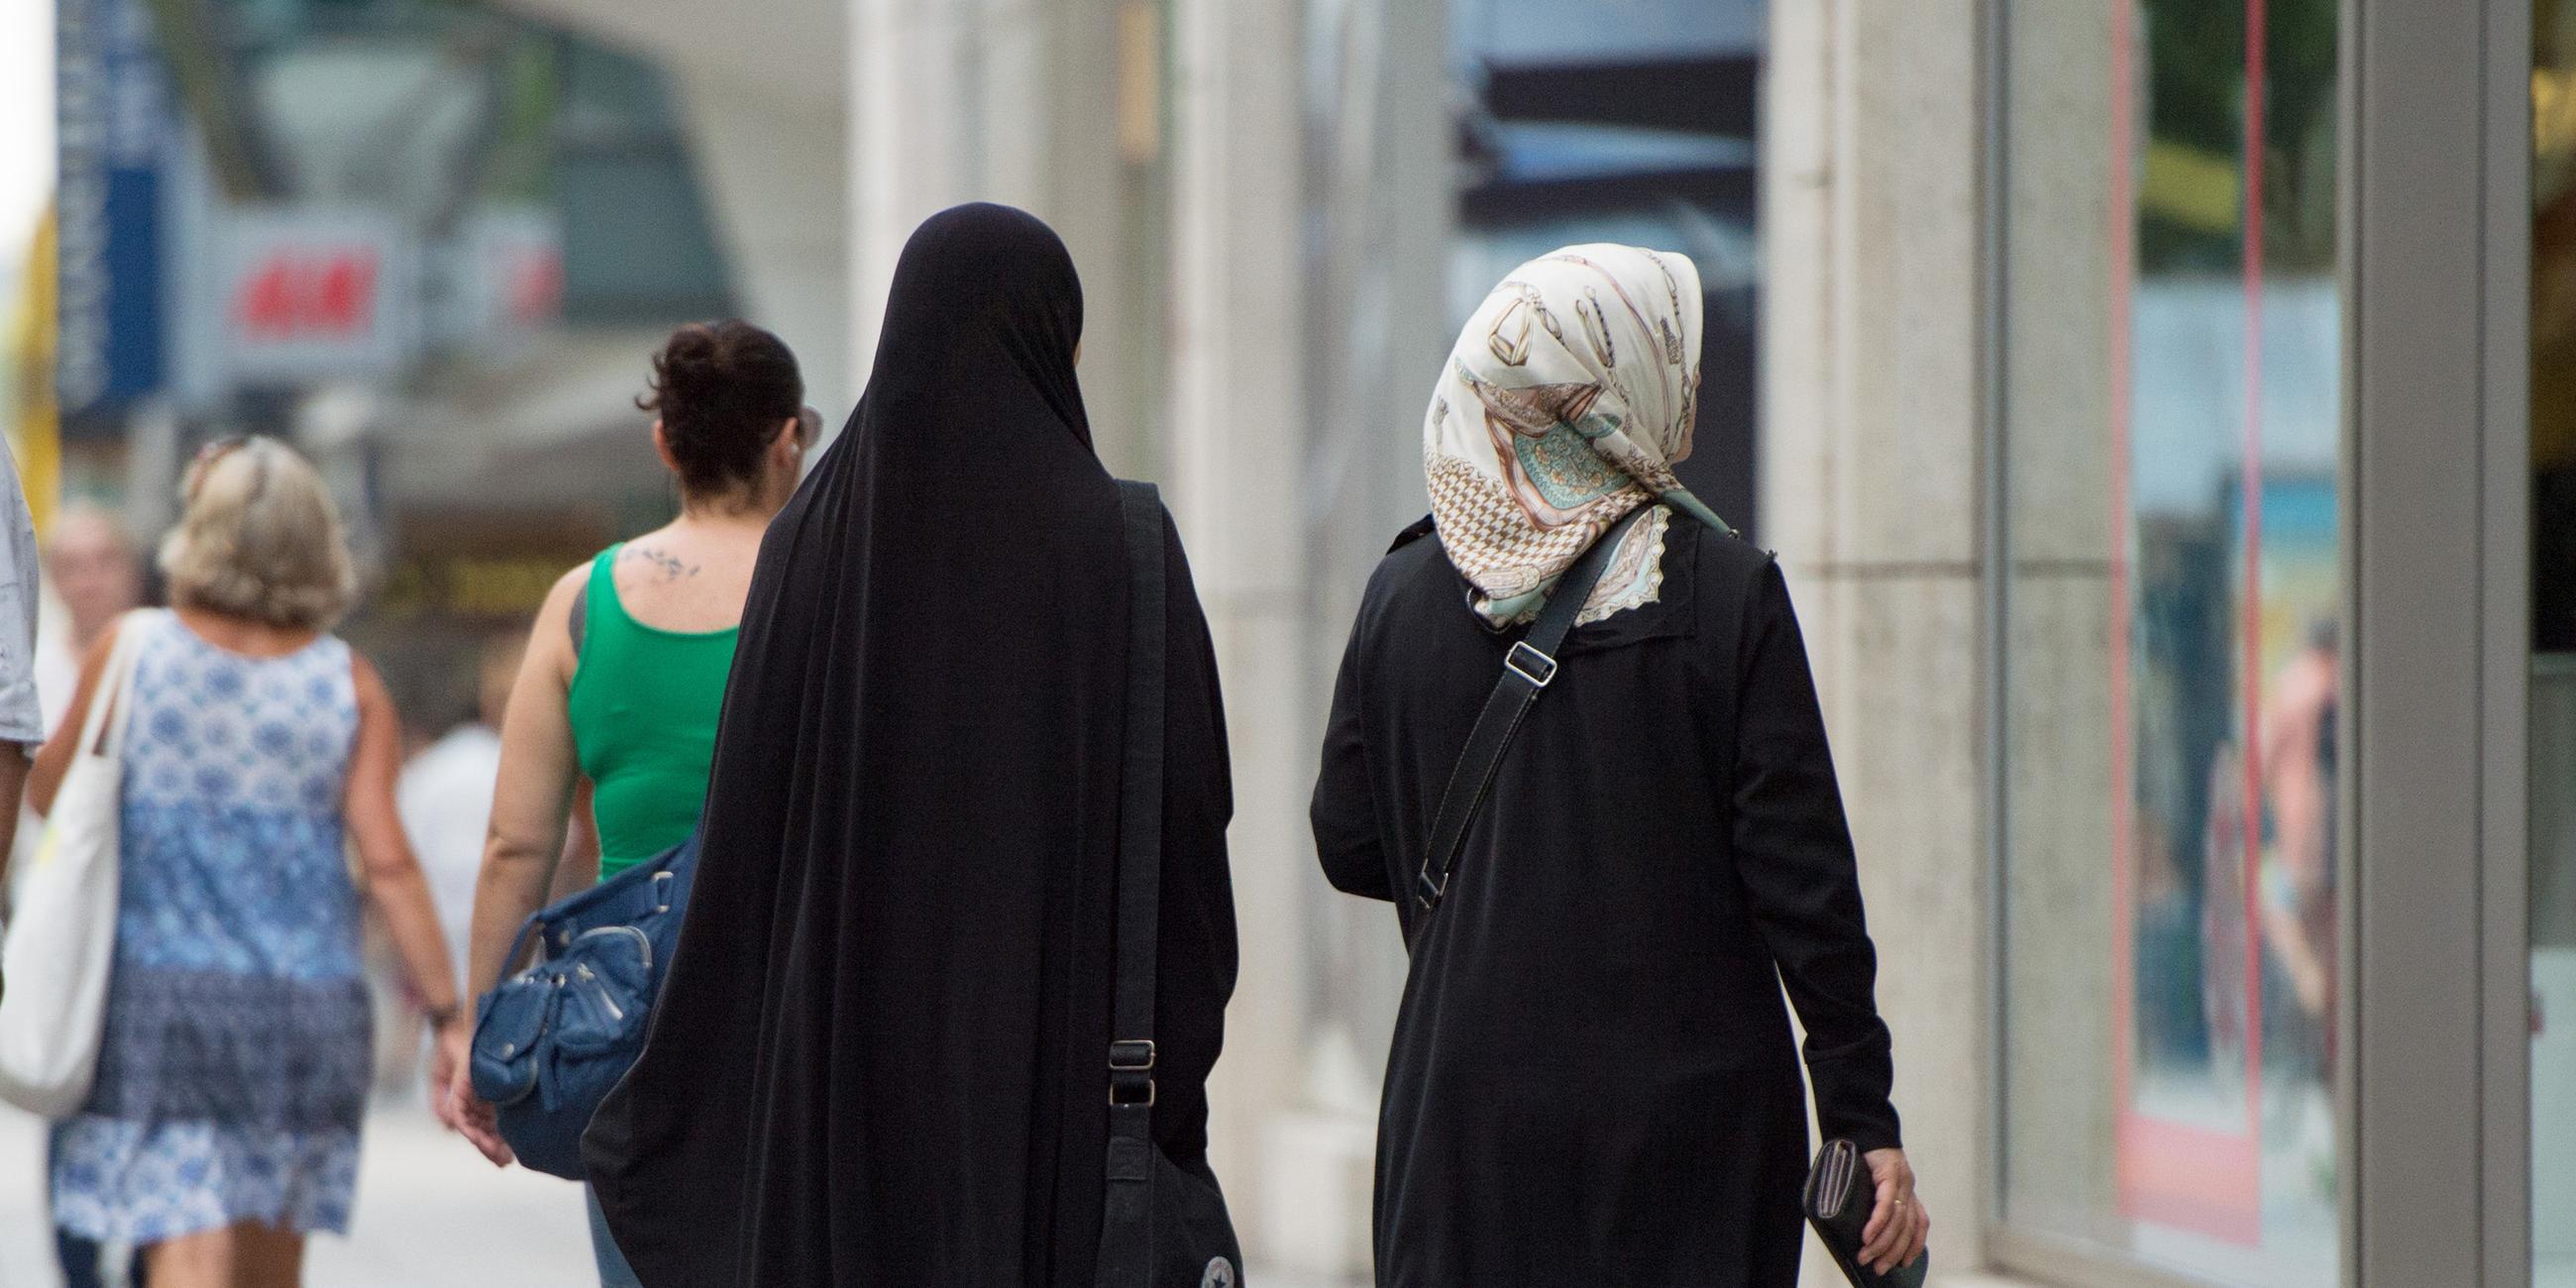 Zwei Frauen mit Kopftuch und langer Oberbekleidung gehen eine Straße entlang.